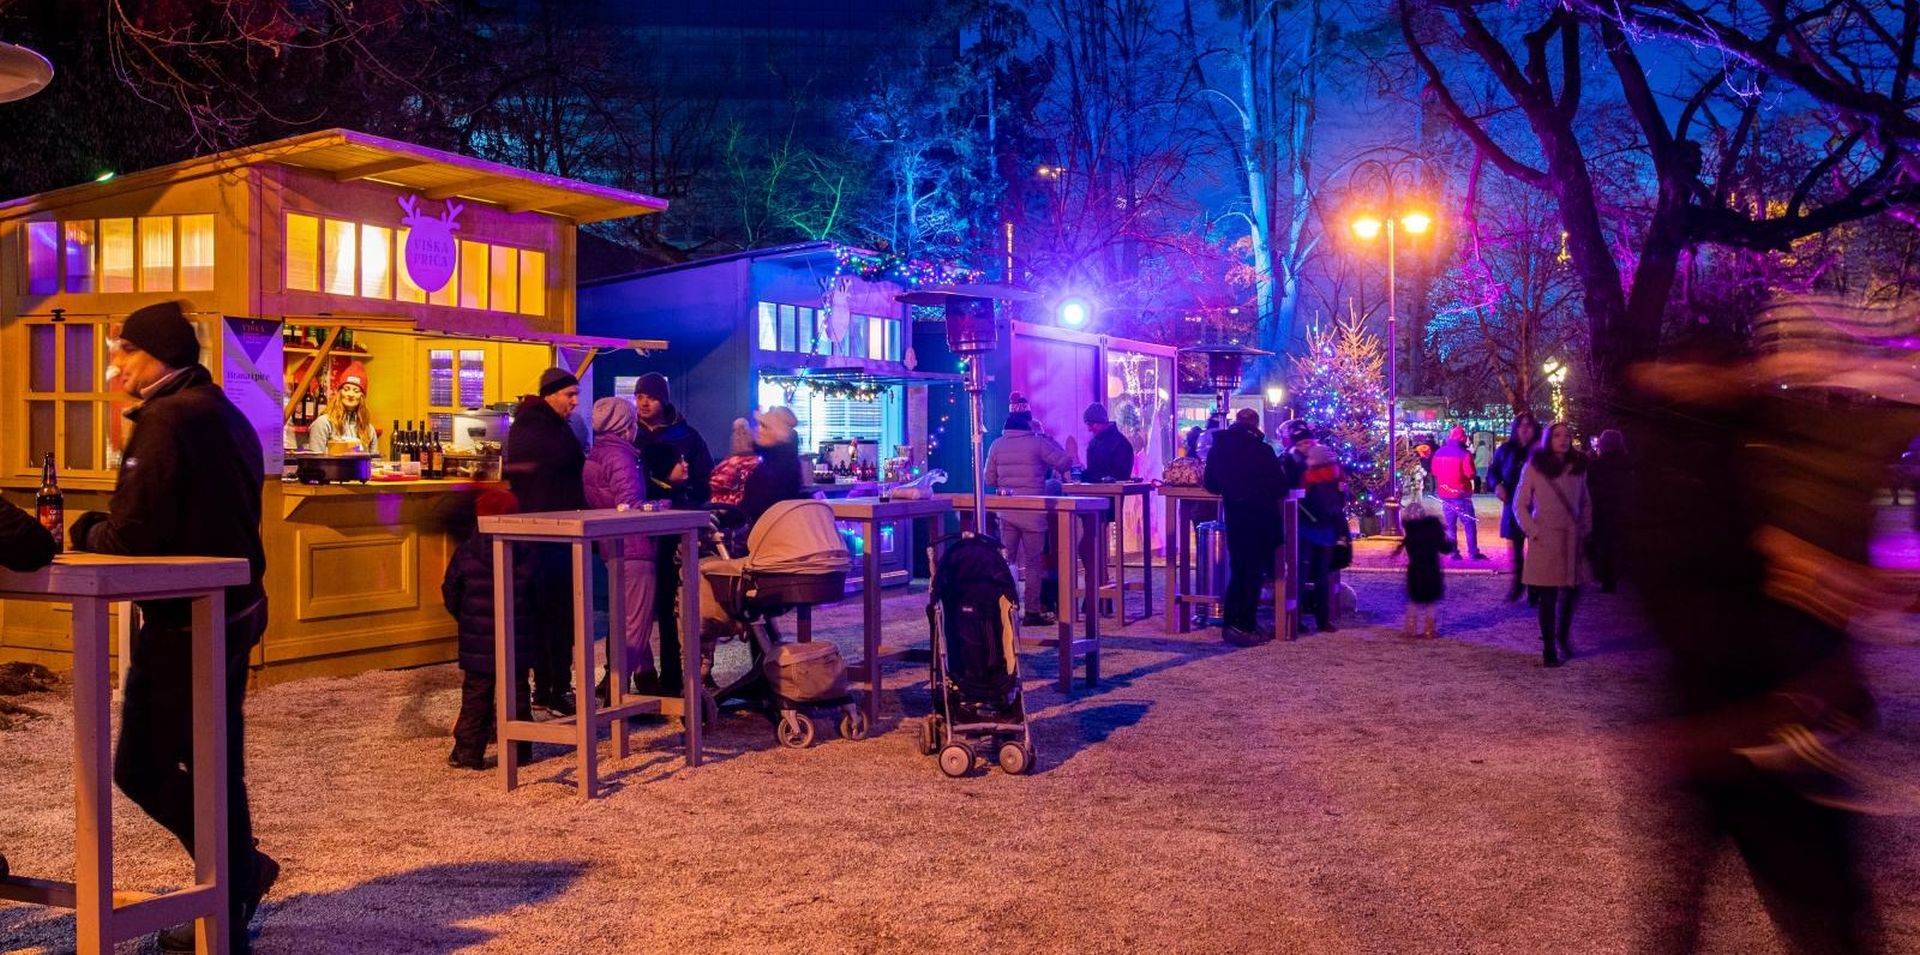 01.12.2019., Zagreb - U vecernjim satima otvoren je Advent u parku Maksimir.
Photo: Davor Puklavec/PIXSELL